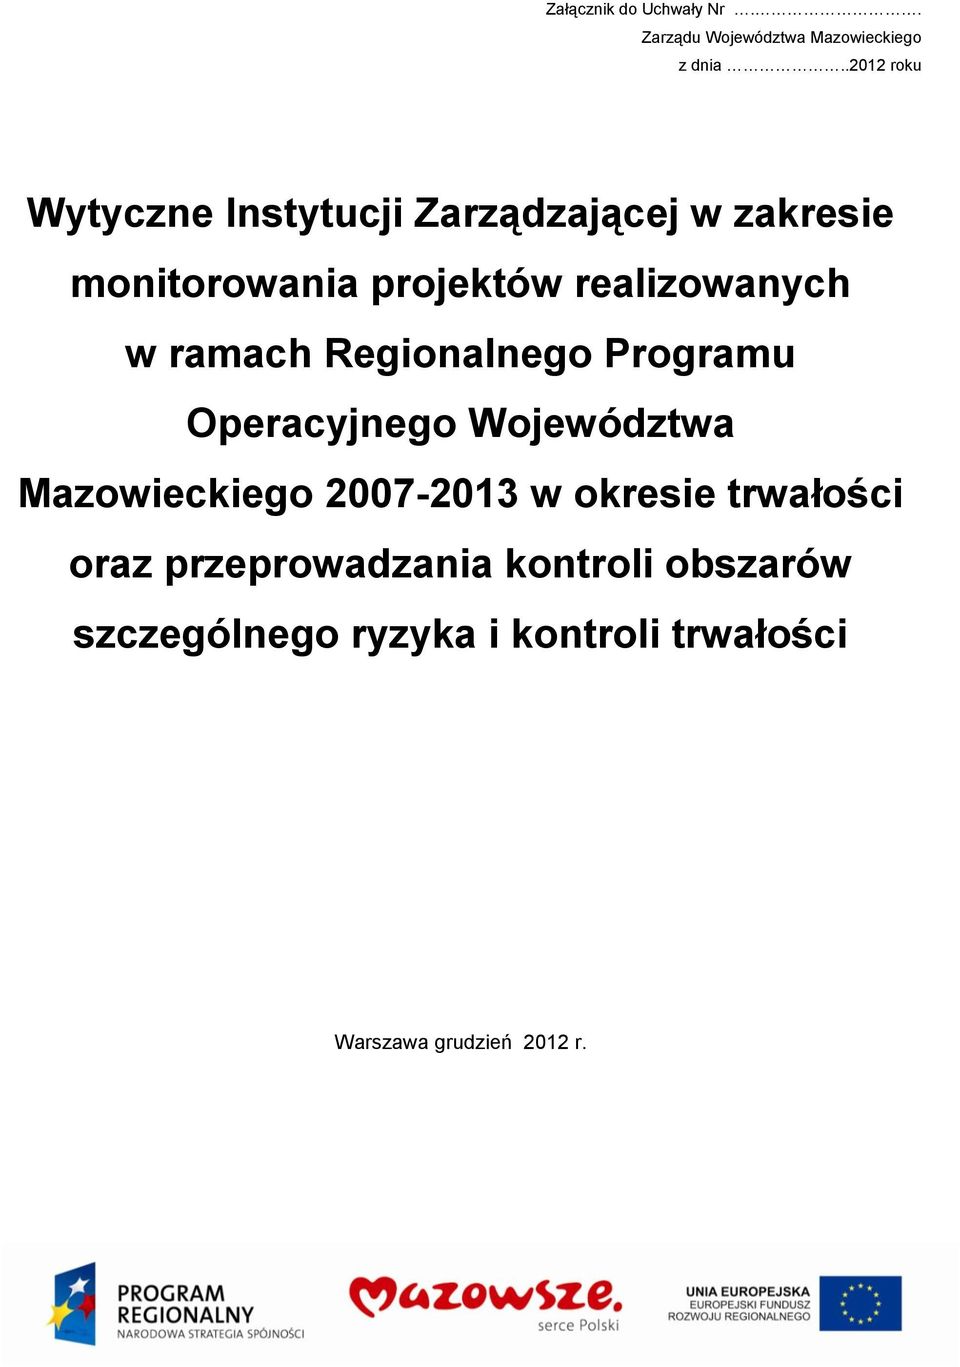 realizowanych w ramach Regionalnego Programu Operacyjnego Województwa Mazowieckiego